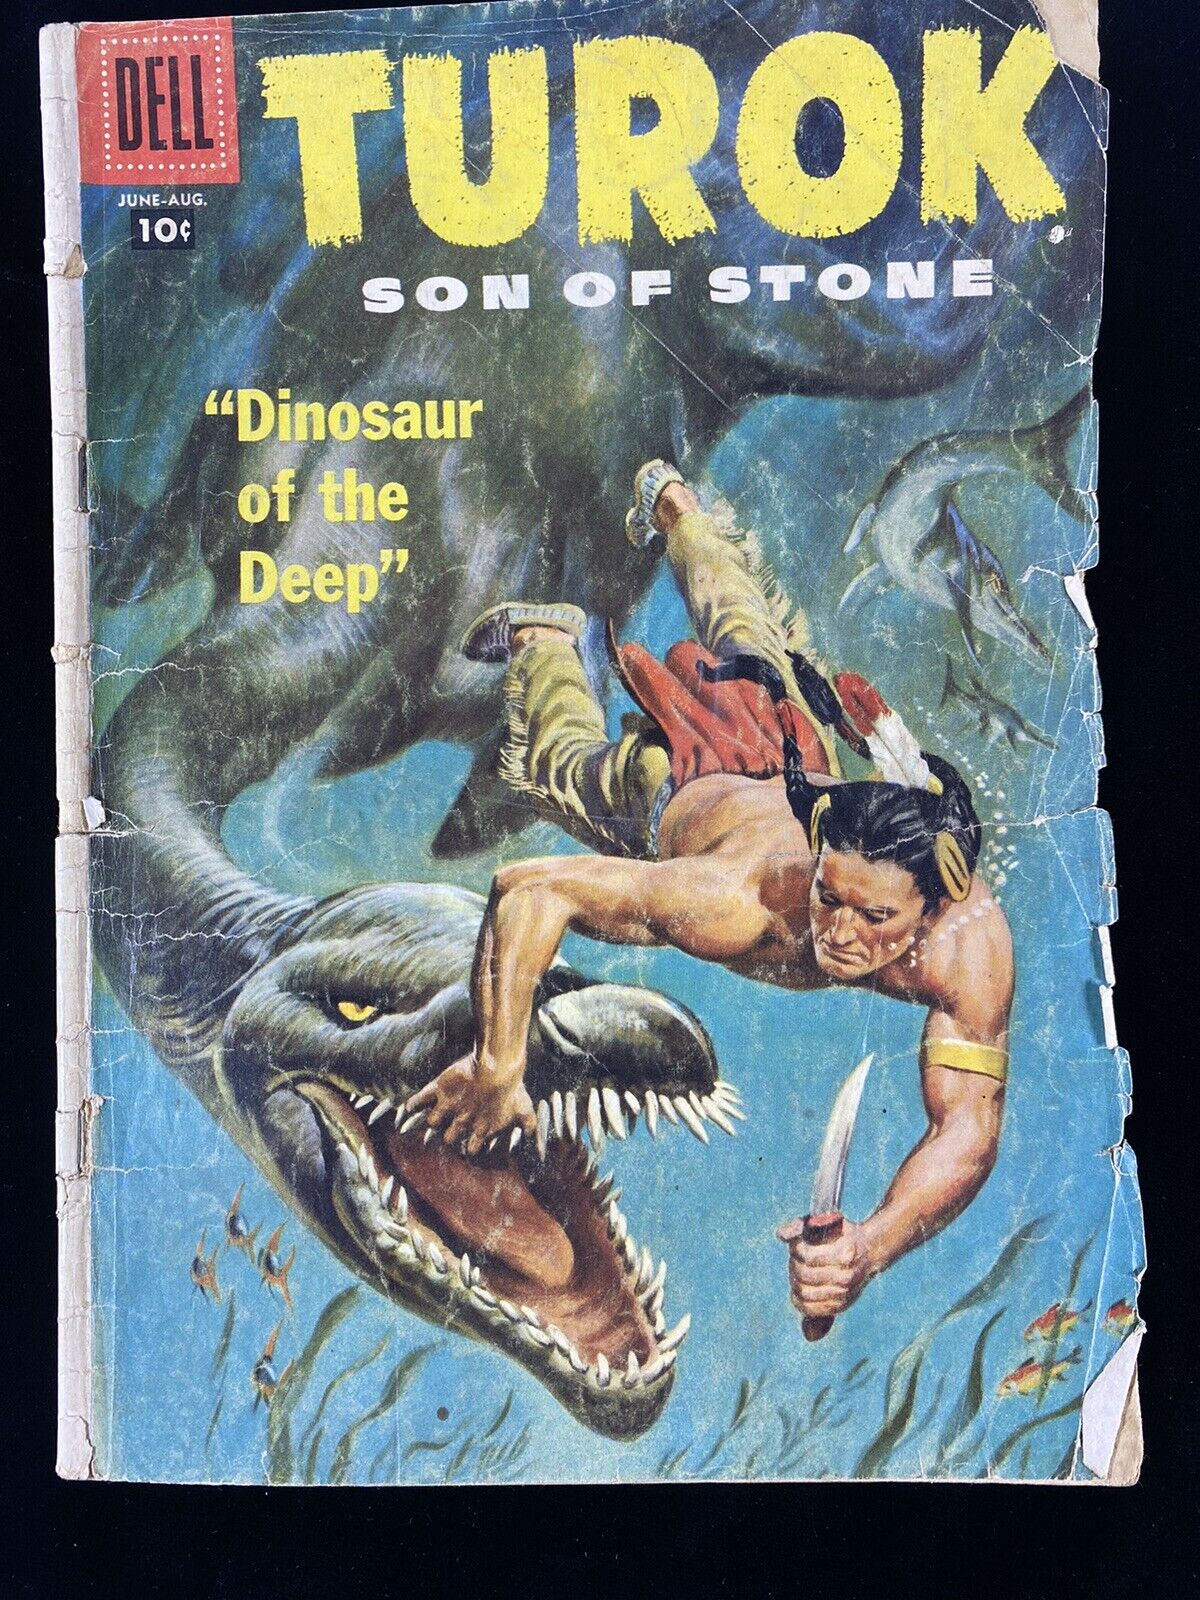 Dell Comic - Turok, Son of Stone #8 (June-Aug, 1957)